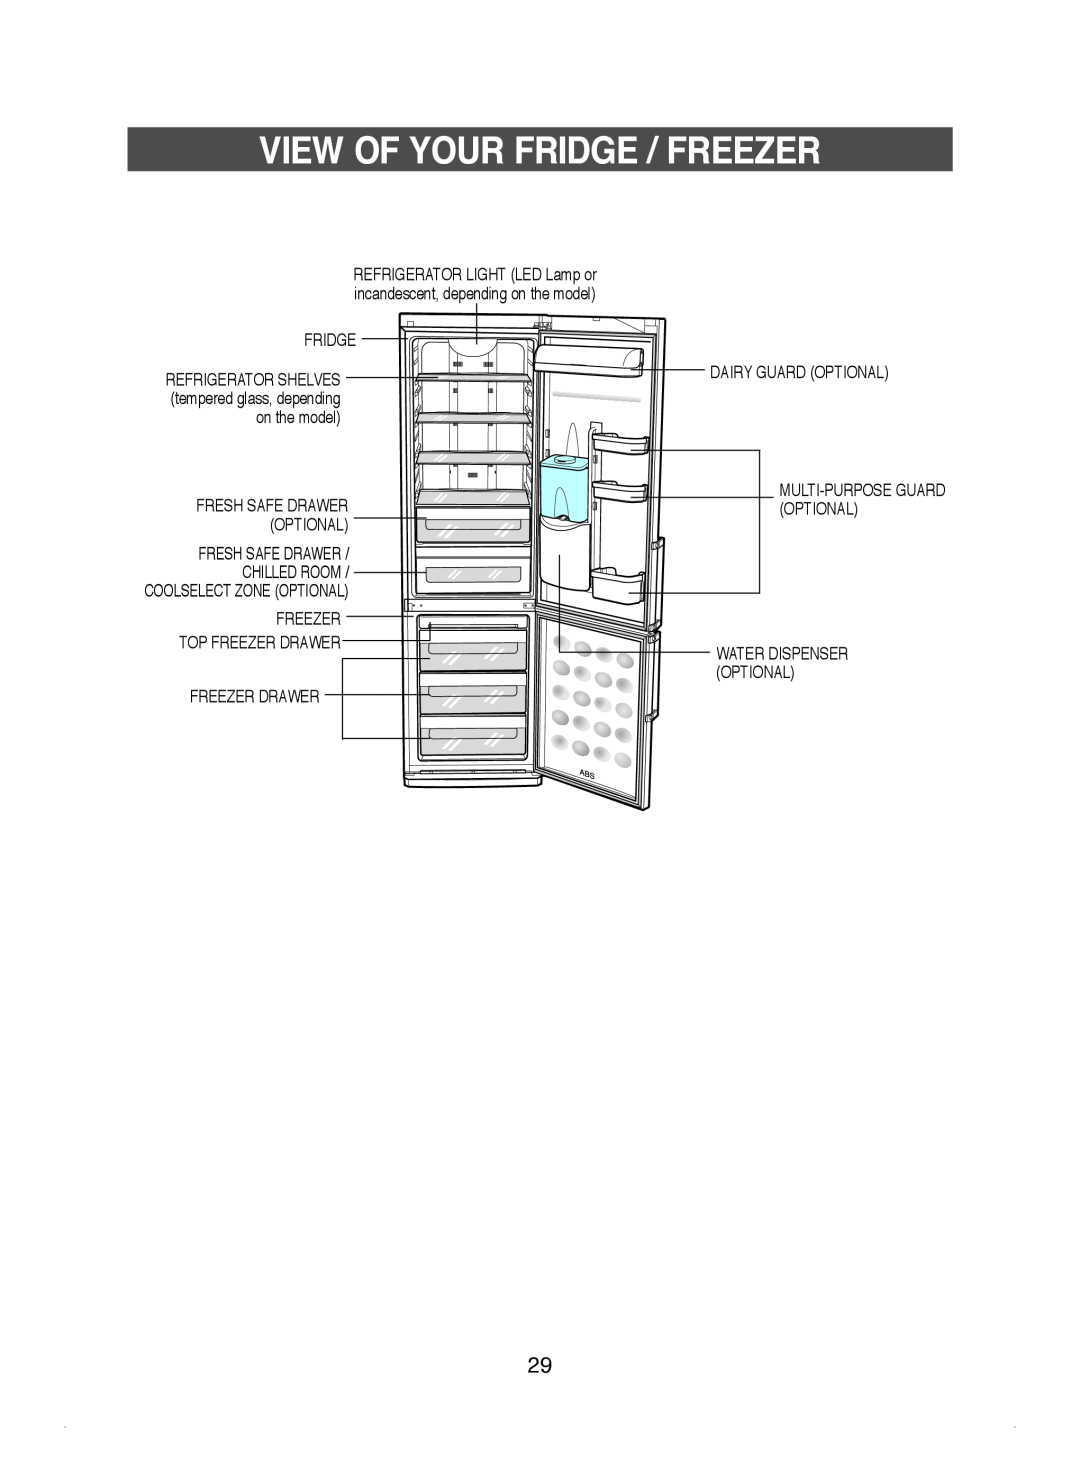 Samsung DA99-01220J manual View Of Your Fridge / Freezer, Refrigerator Shelves, tempered glass, depending 